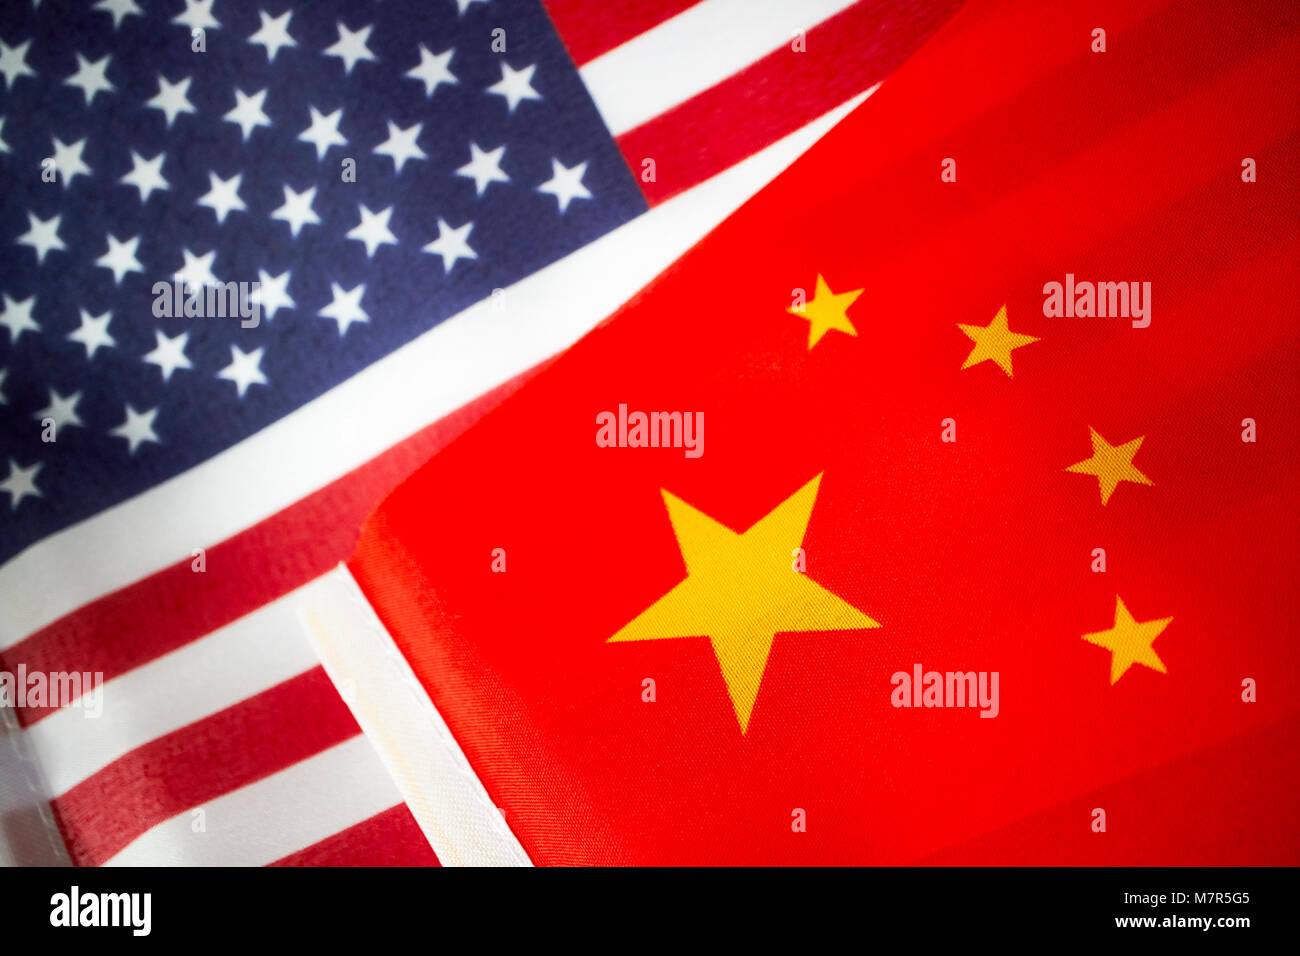 Us Stars und Stripes Fahne mit der Chinesischen Flagge Flaggen Stockfoto